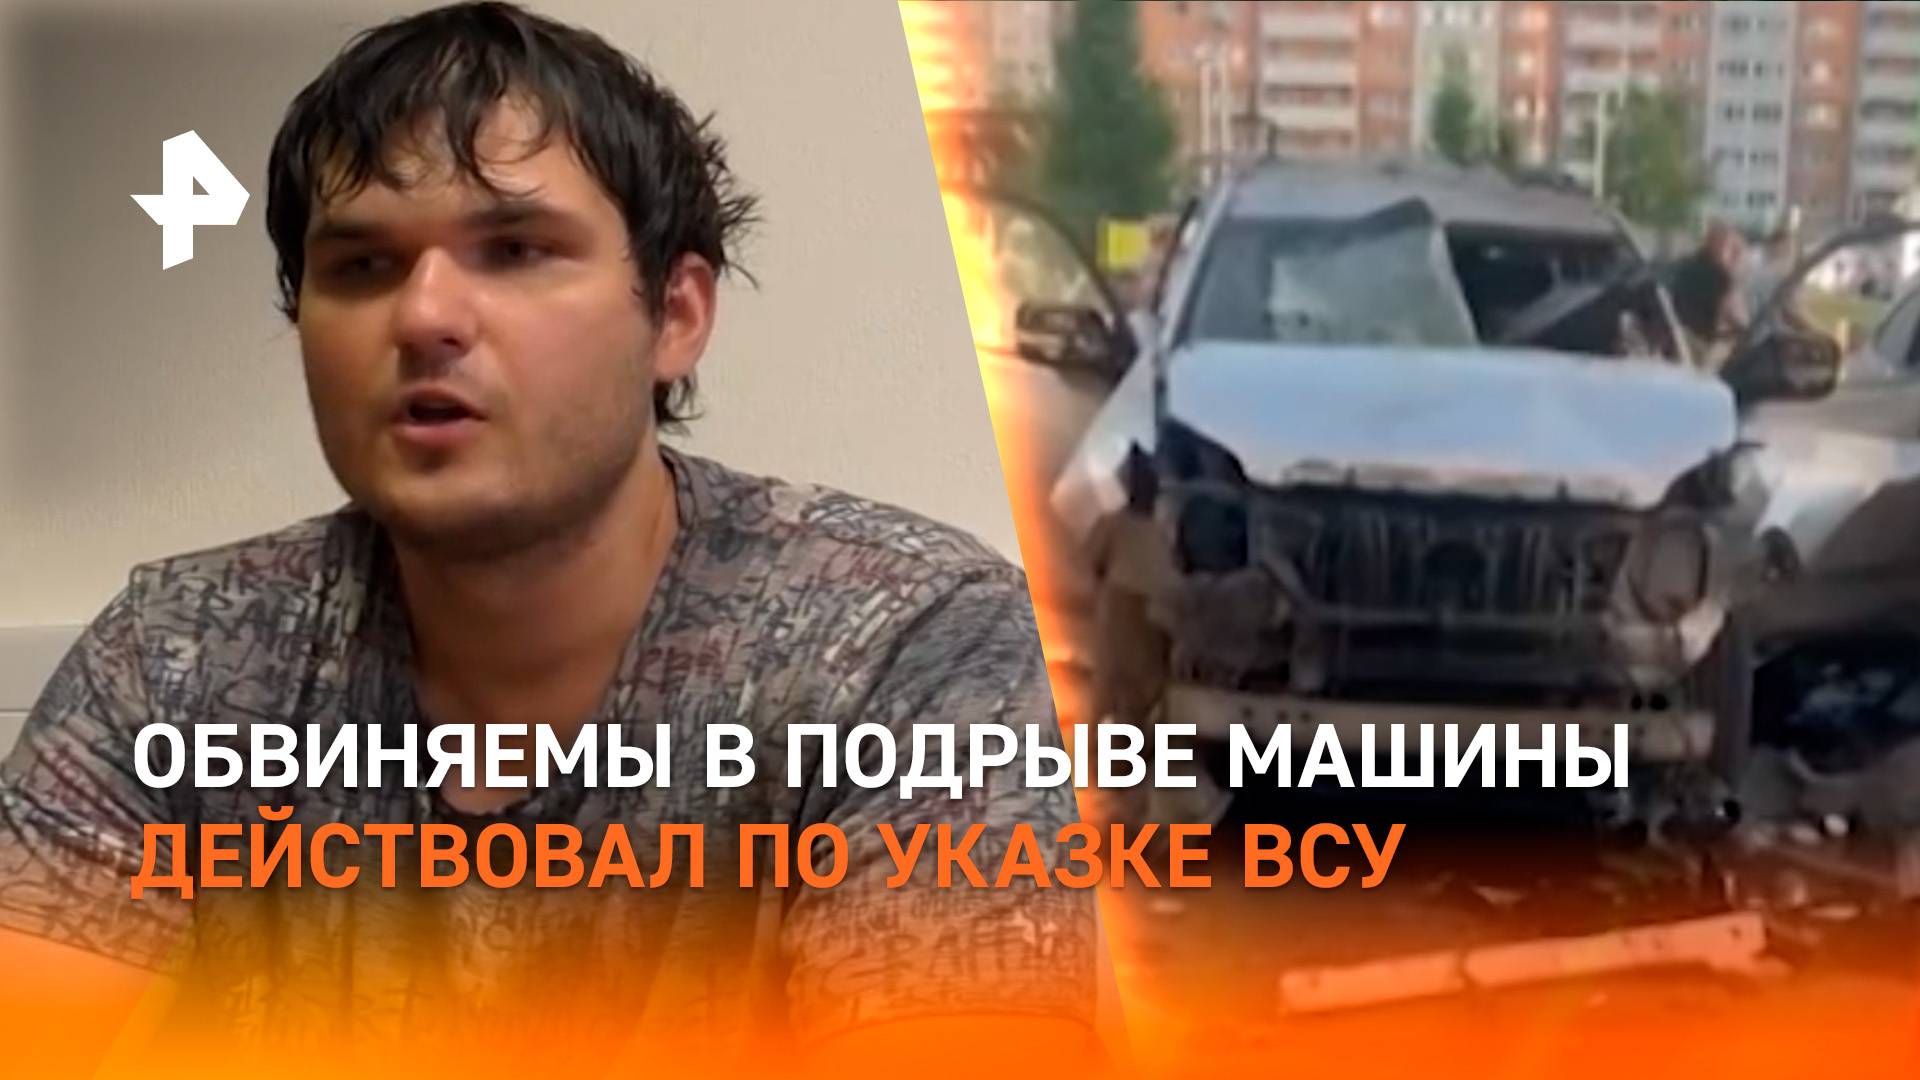 СБУ обещали Серебрякову до $20 тыс. за подрыв машины военного в Москве / РЕН Новости